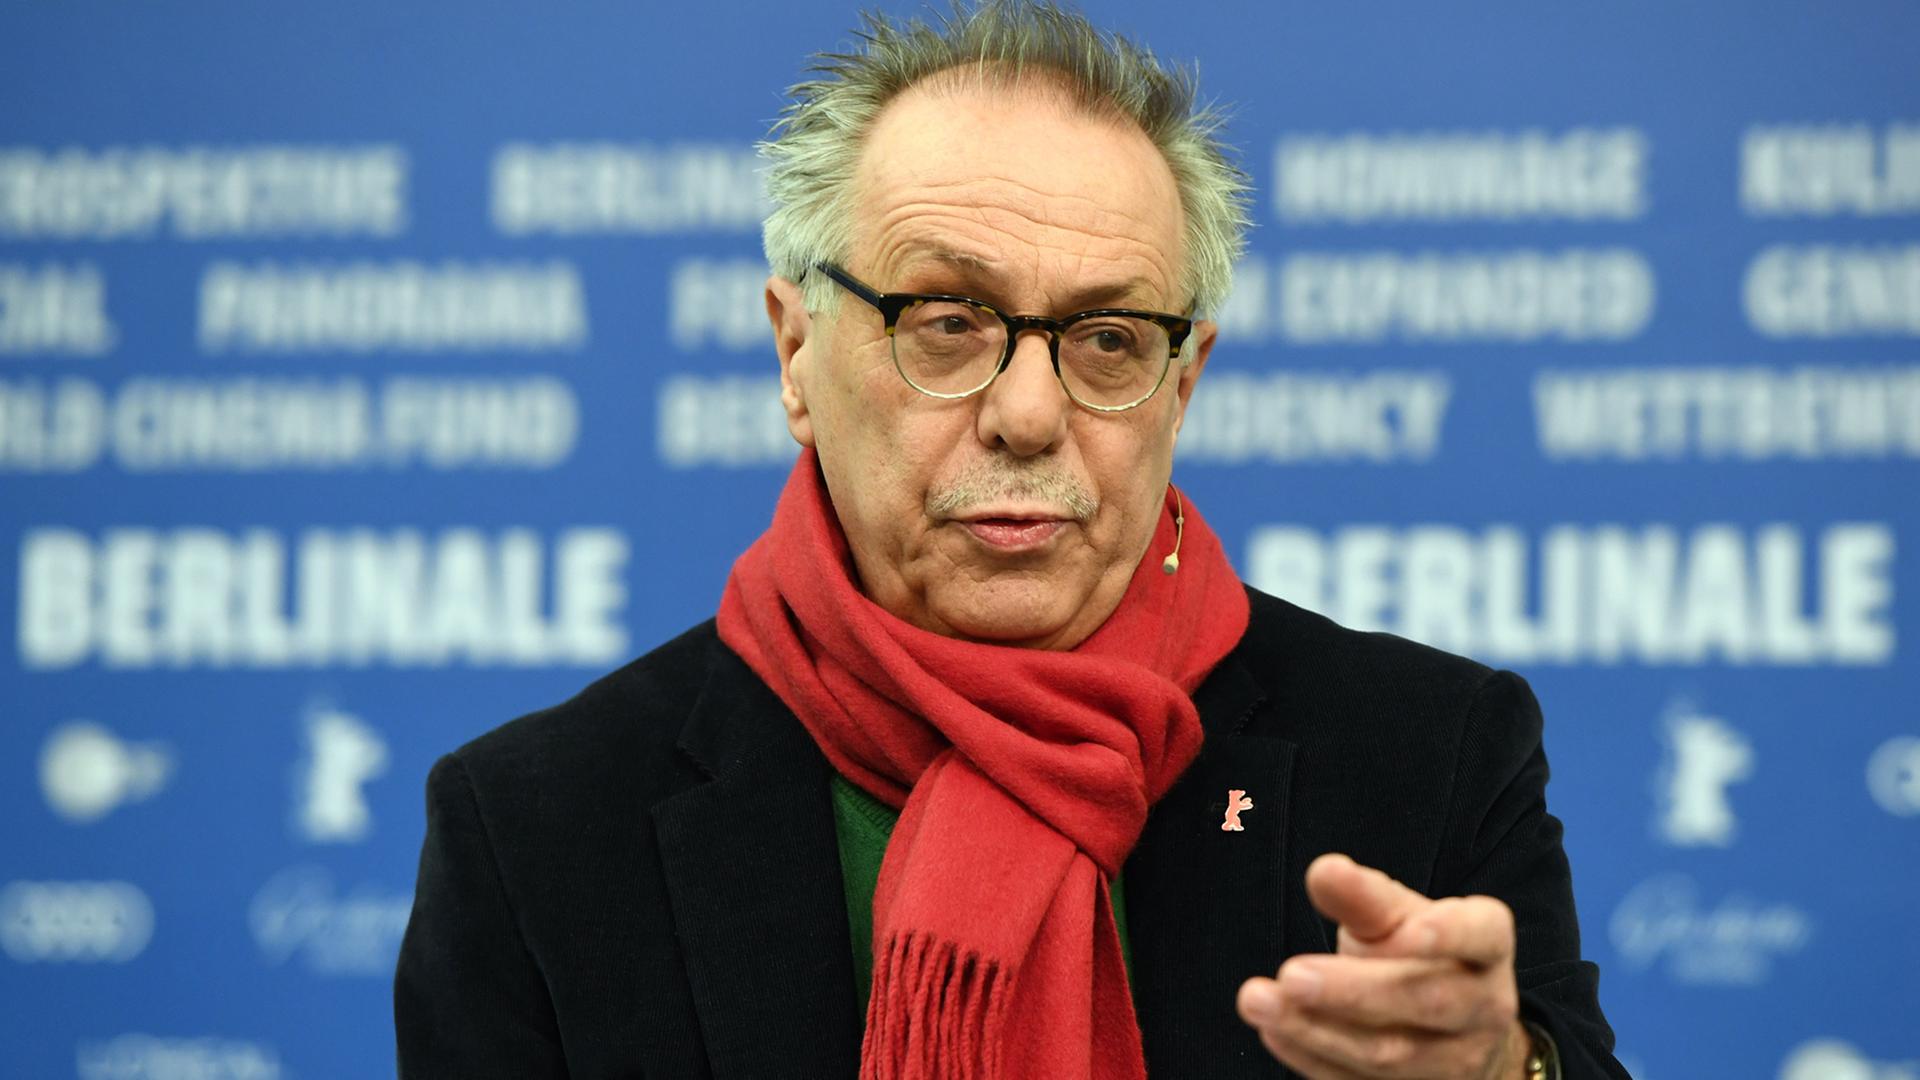 Der Direktor der Internationalen Filmfestspiele Berlin, Dieter Kosslick, spricht am 31.01.2017 in Berlin während einer Pressekonferenz zum Programm der 67. Berlinale.